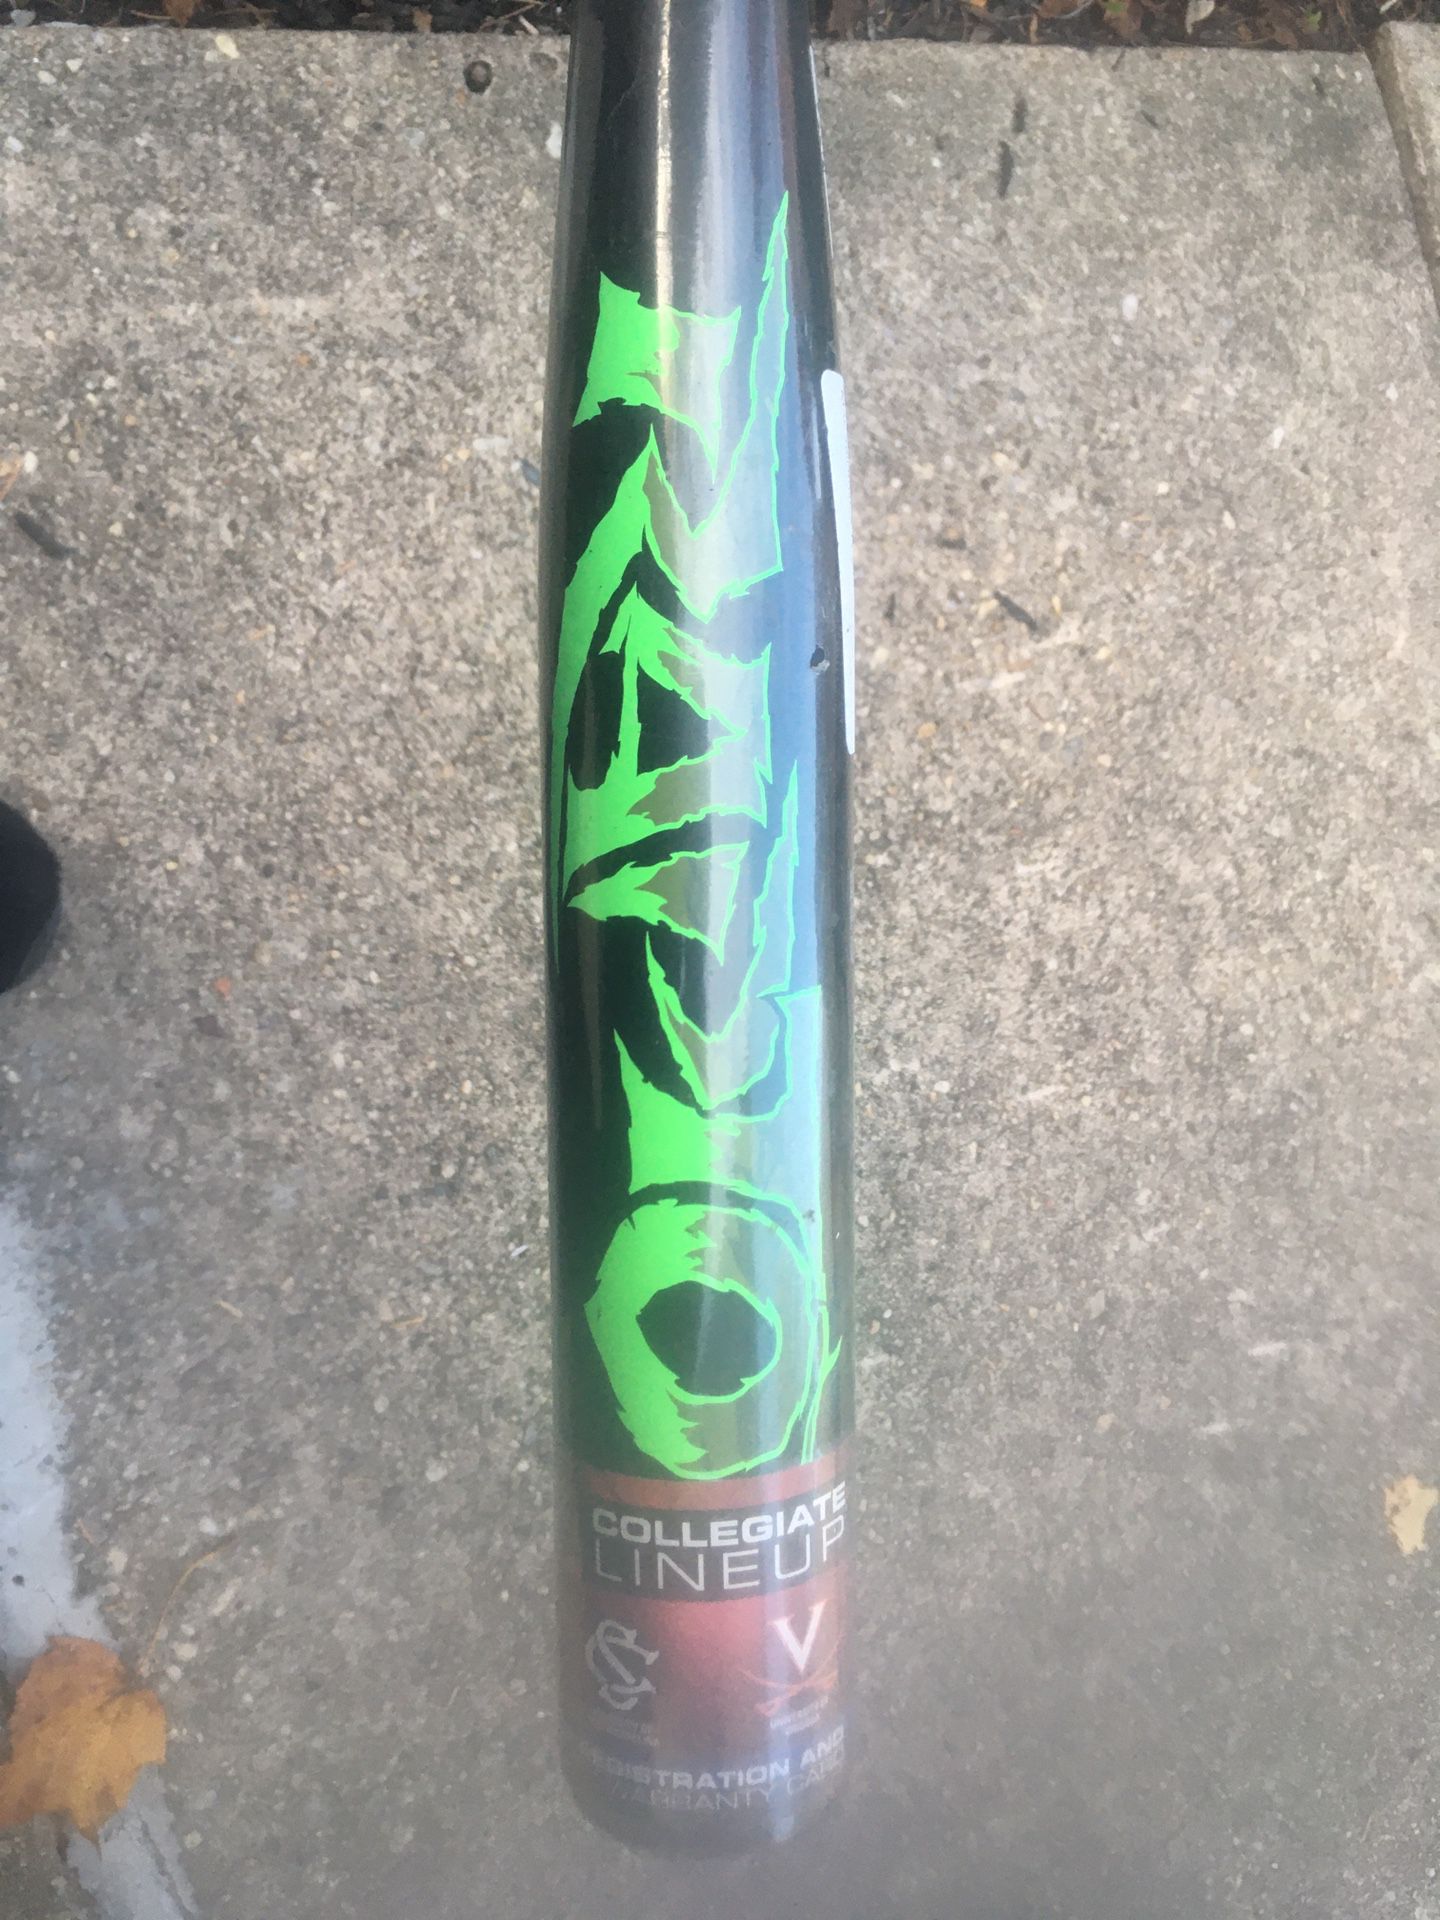 Rawlings Raptor Baseball Bat 31” 20oz Srop -11 Still In Original Wrappwr